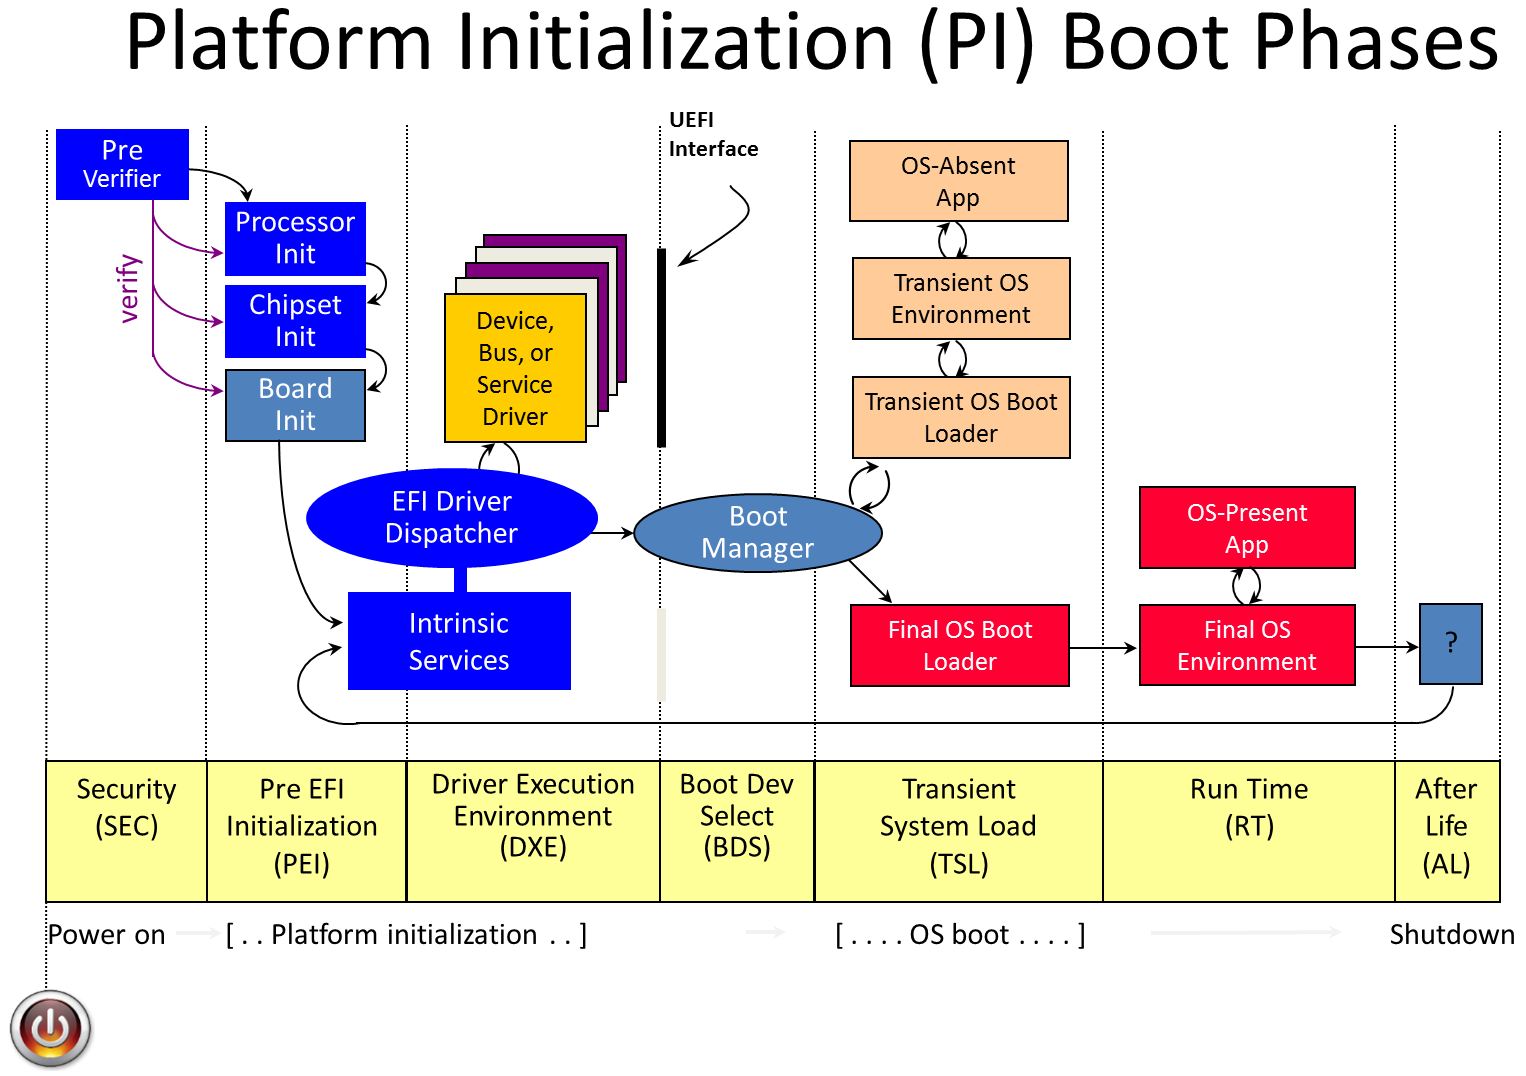 画像 6 は、UEFI ブート プロセスの図です。左から右へ: Security, Pre-EFI initialization, Driver Execution environment, Boot Dev Select, transient system load, run time, and after life. これらの各セクションには複数の手順があります。 